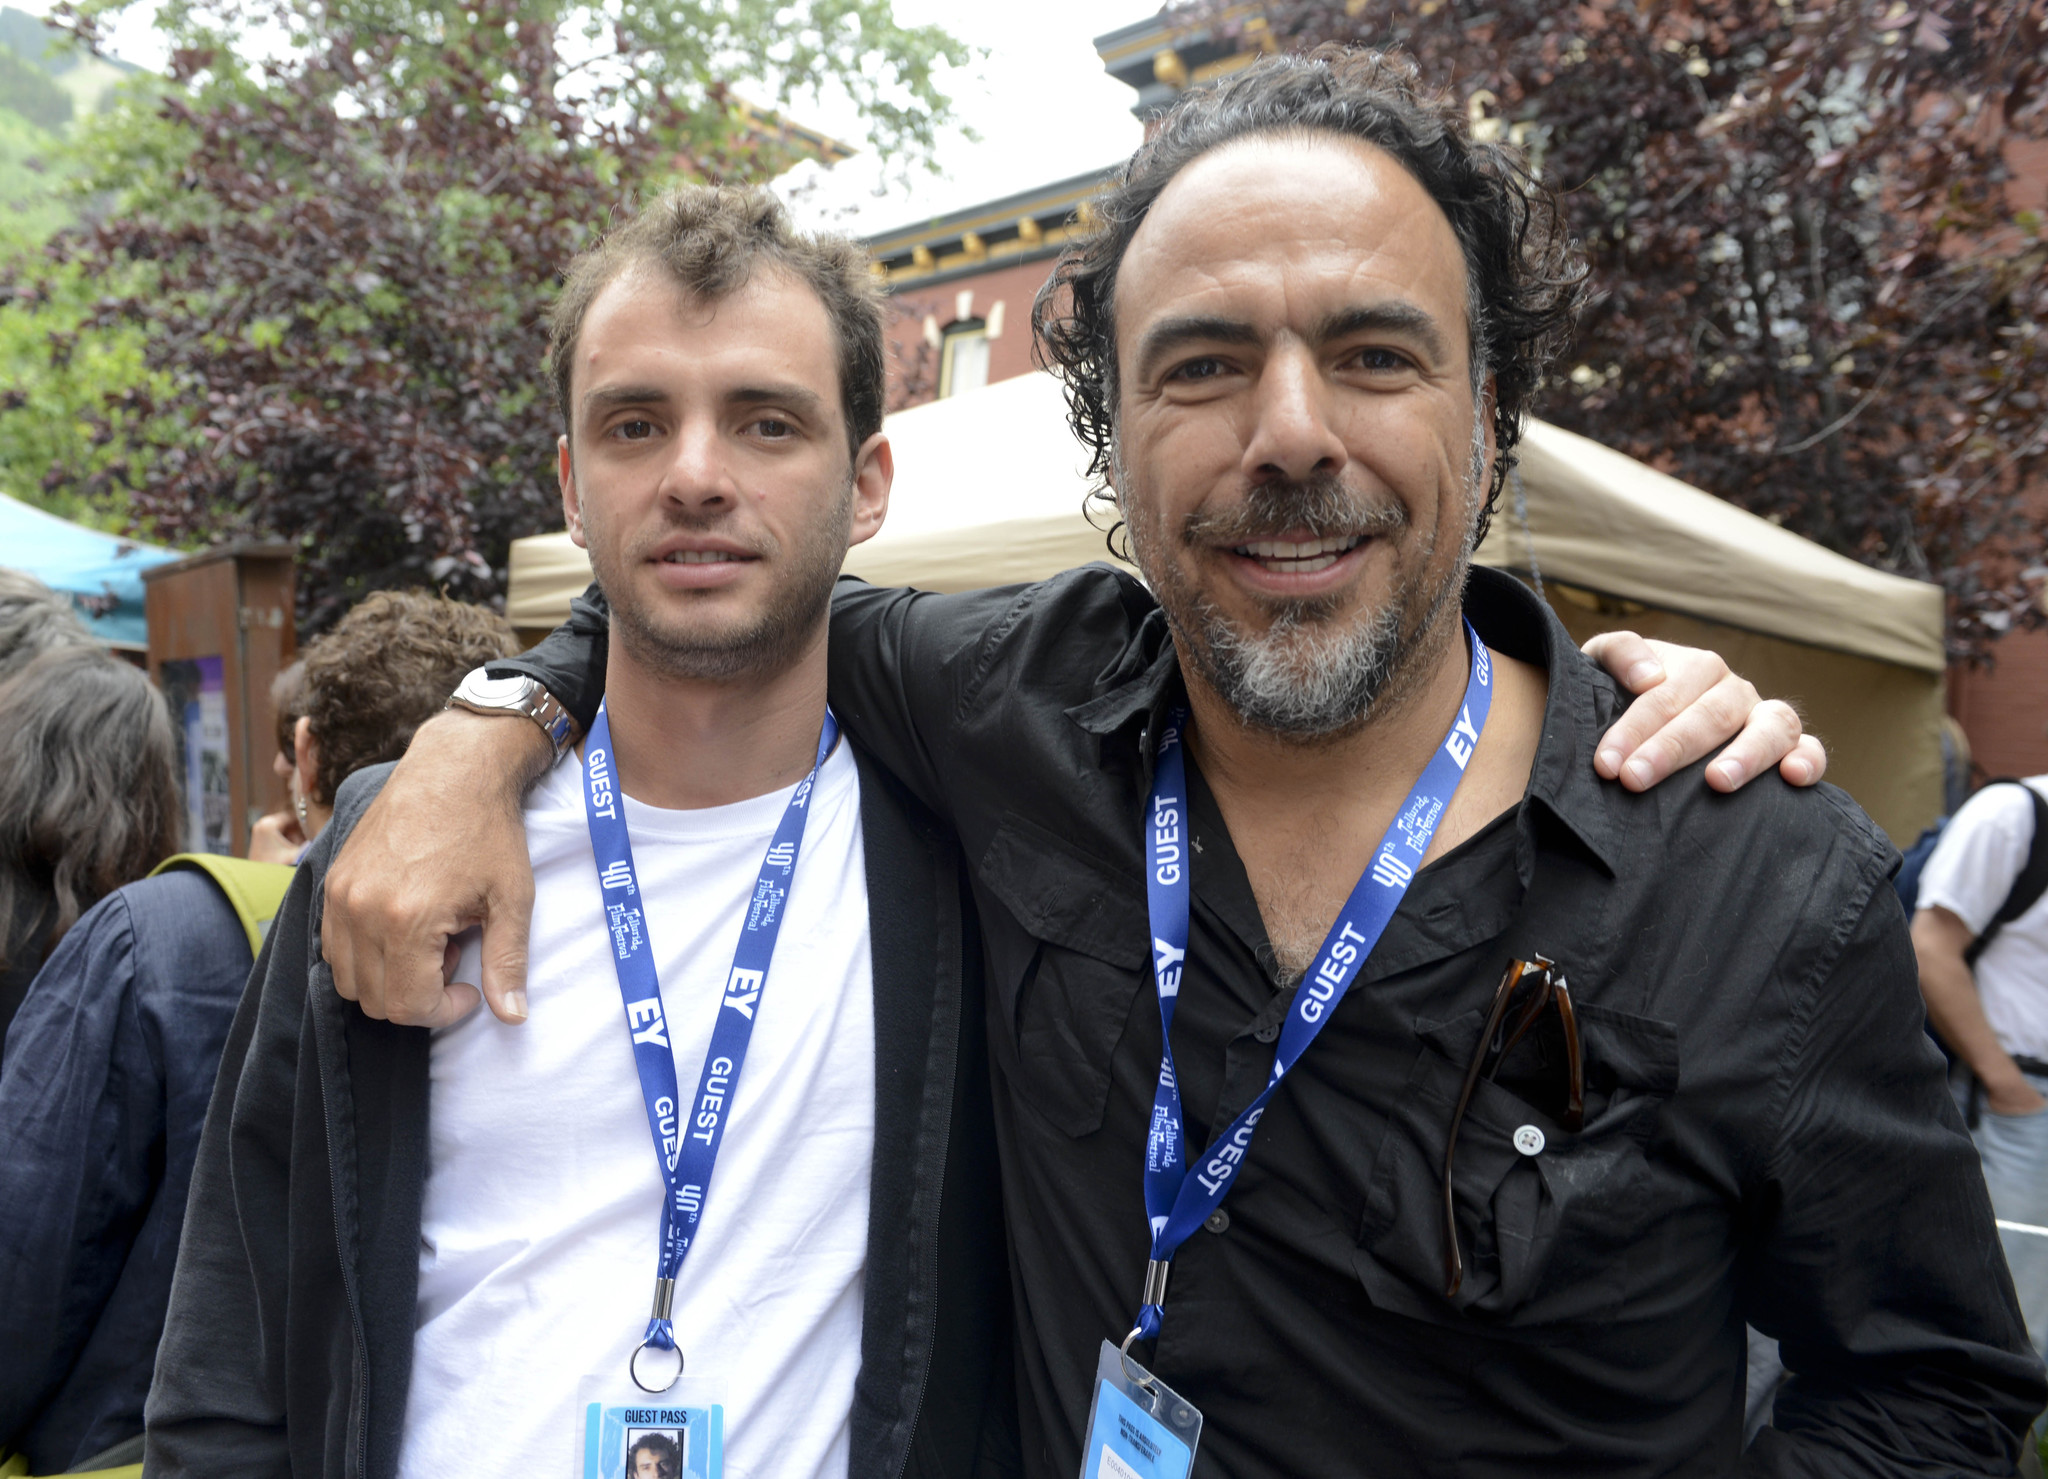 Jonás Cuarón and Alejandro González Iñárritu